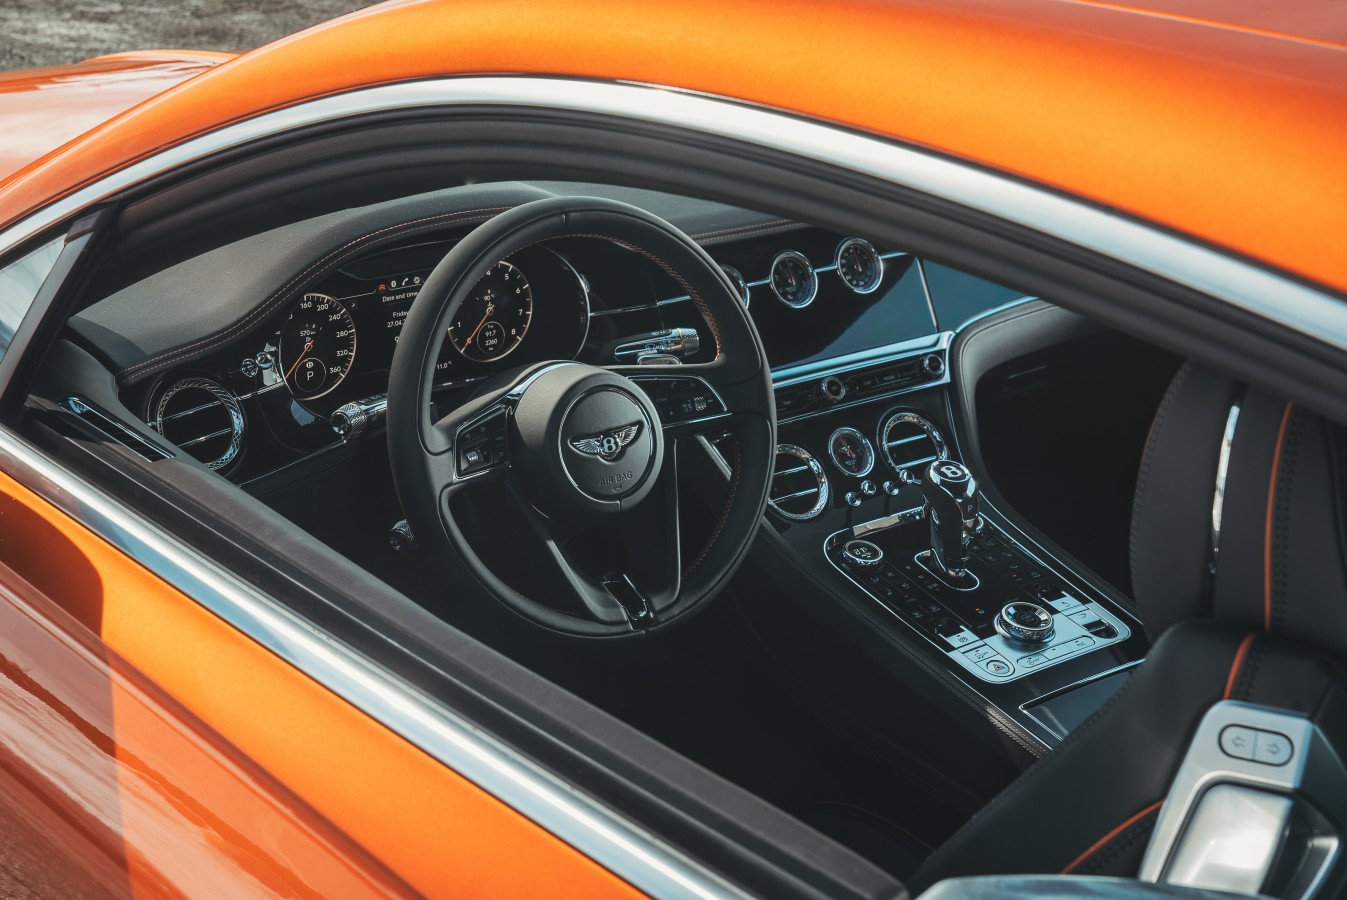 НОВЫЙ BENTLEY CONTINENTAL GT – УЖЕ В ШОУ-РУМАХ - изображение Bentley-Continental-GT-Orange-Flame-37 на Bentleymoscow.ru!